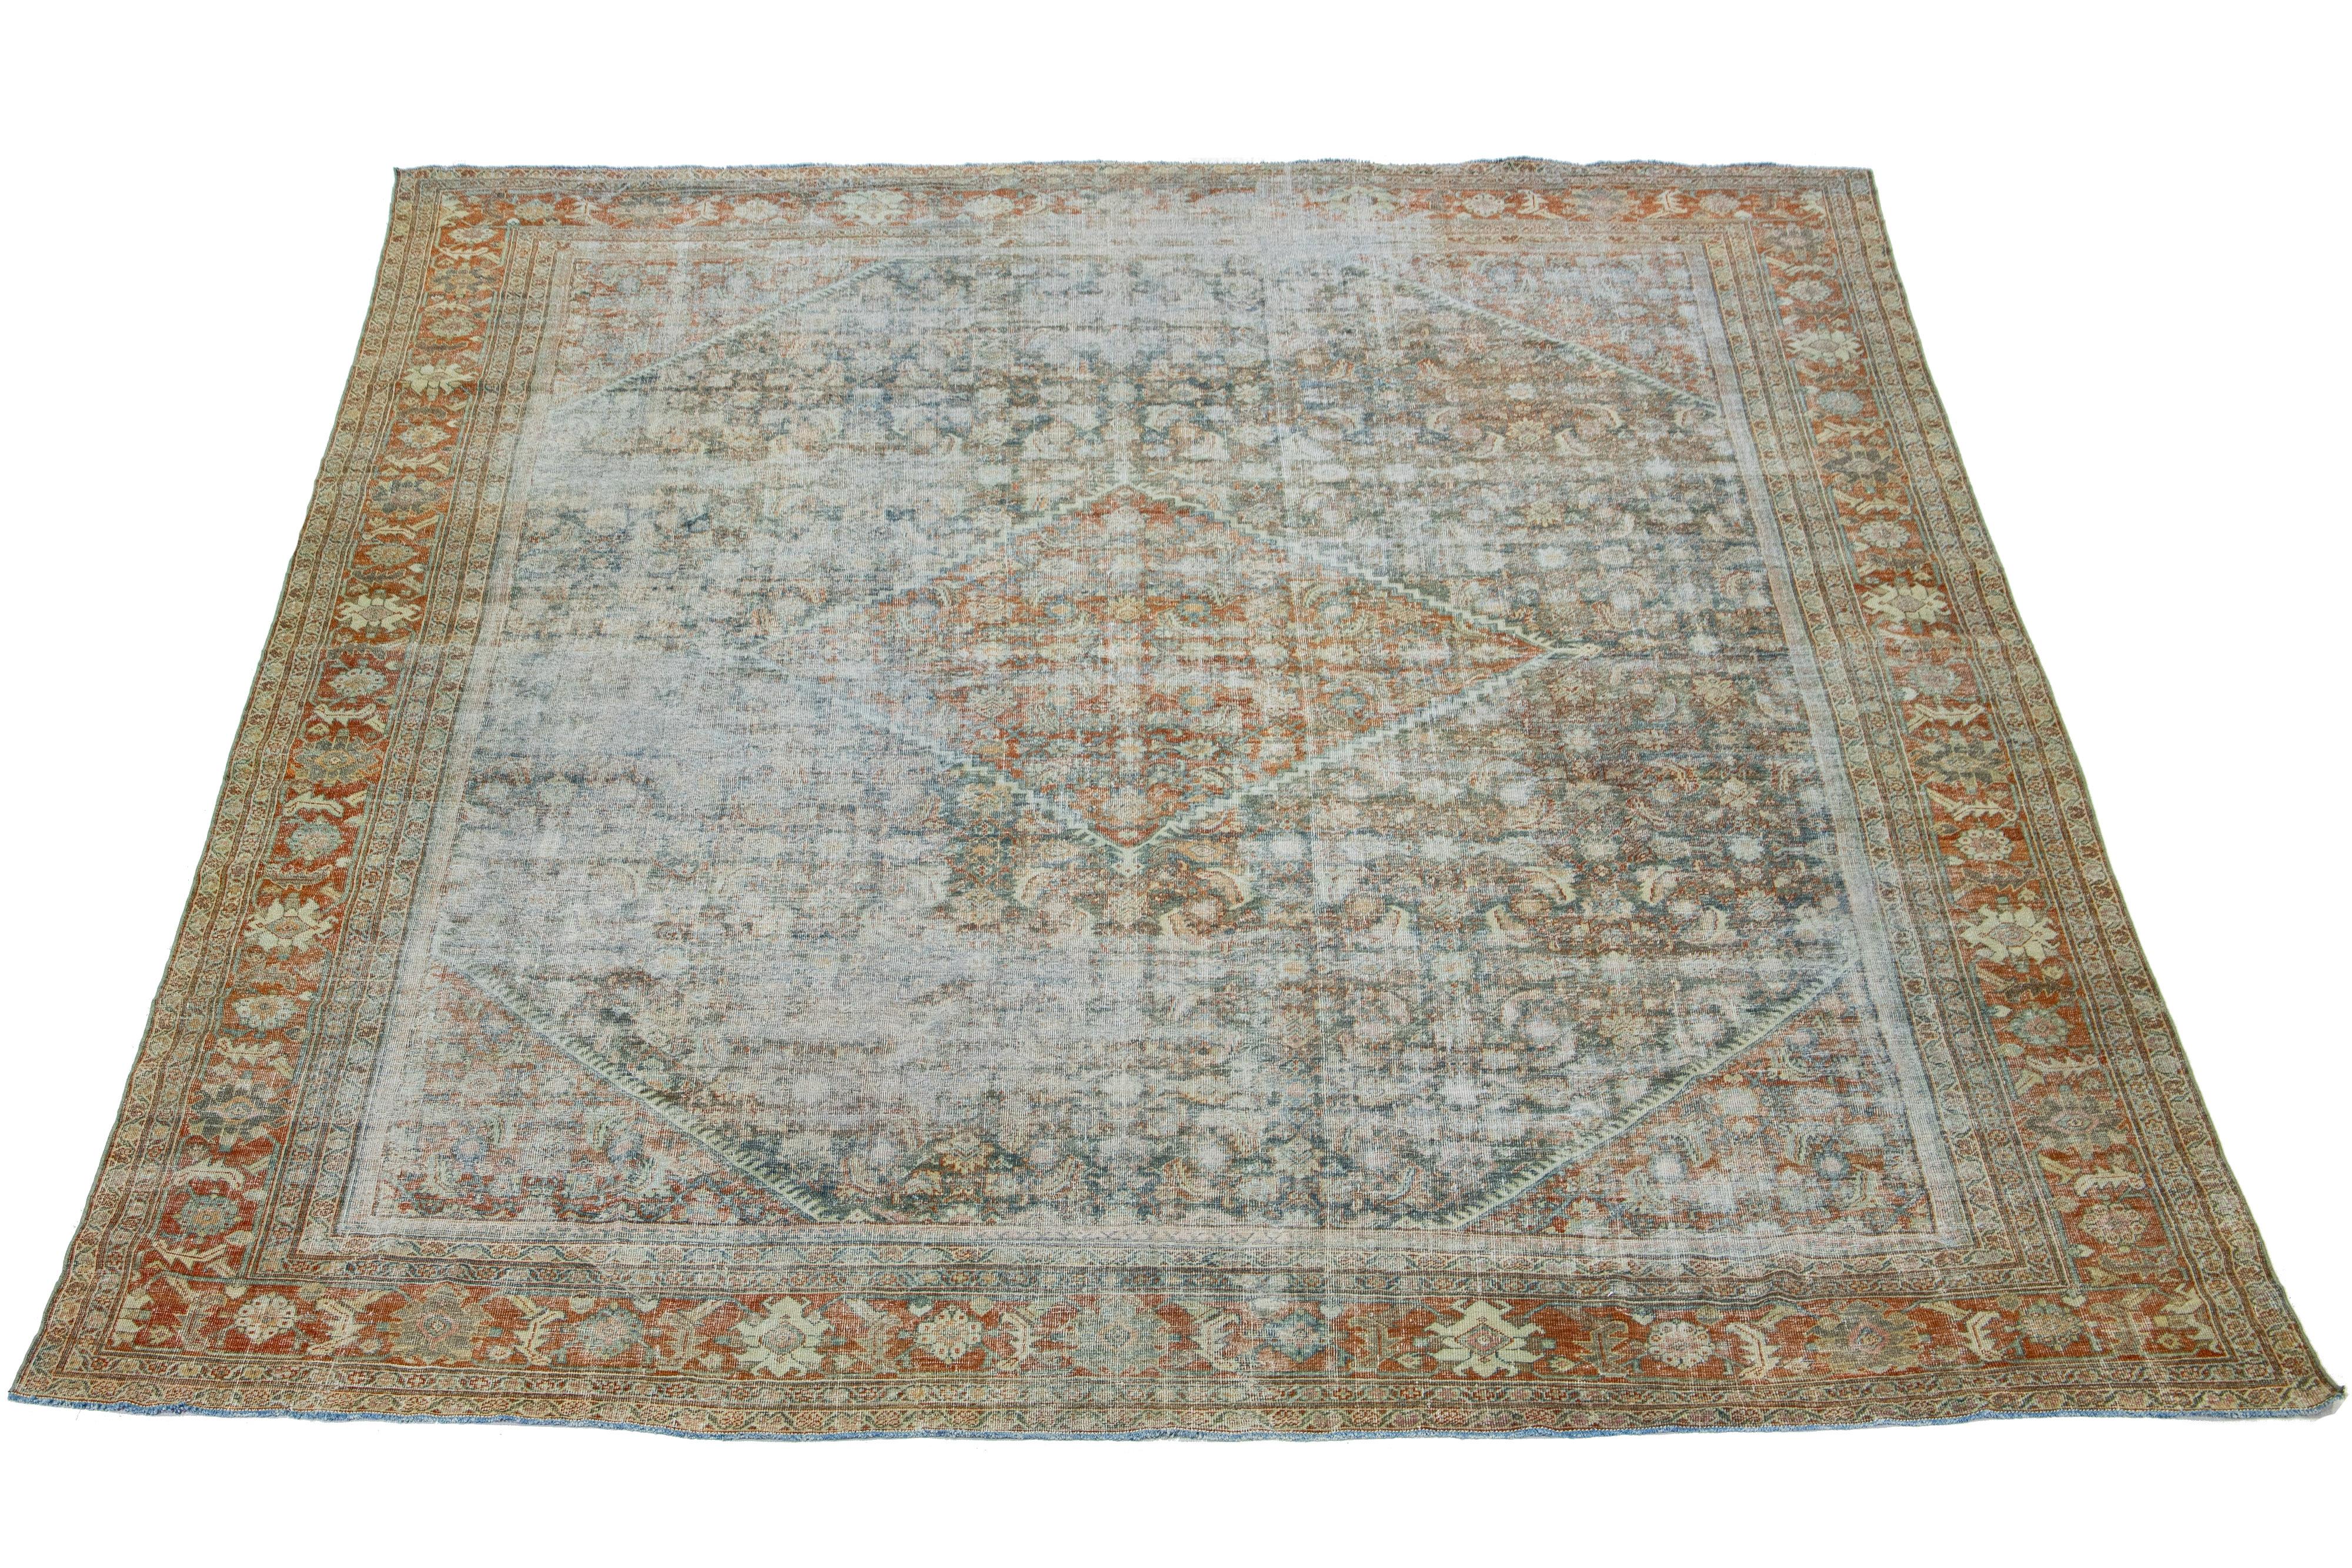 Schöner antiker Mahal handgeknüpfter Wollteppich mit rostfarbenem Feld. Dieser Perserteppich ist in klassischen Blau-, Grau-, Beige- und Brauntönen gehalten, die sich durch das florale Motiv ziehen.

Dieser Teppich misst 12'3